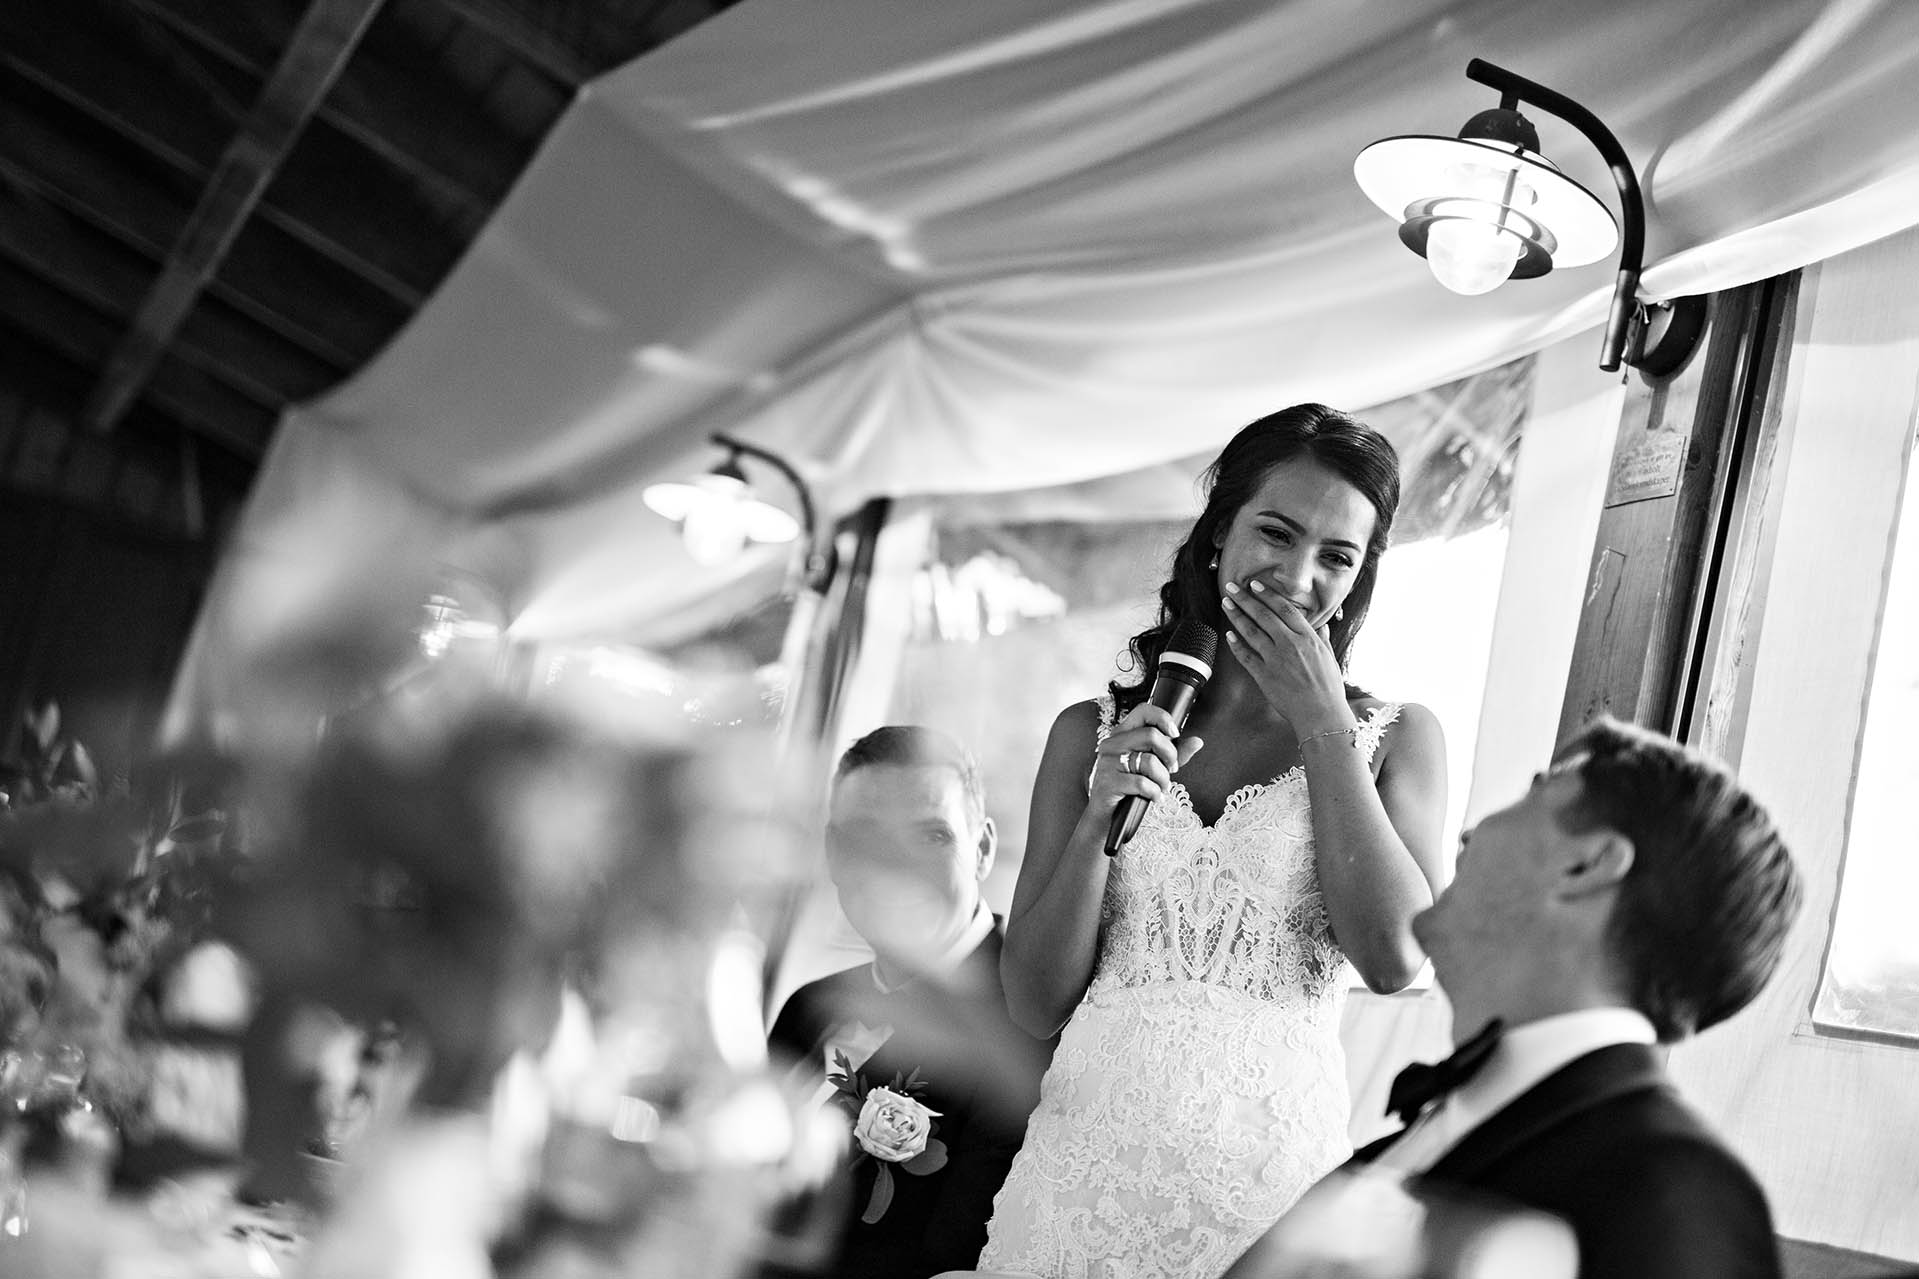 Brudens tale til brudgommen. En smilende brud med tårer i øynene som holder en mikrofon.